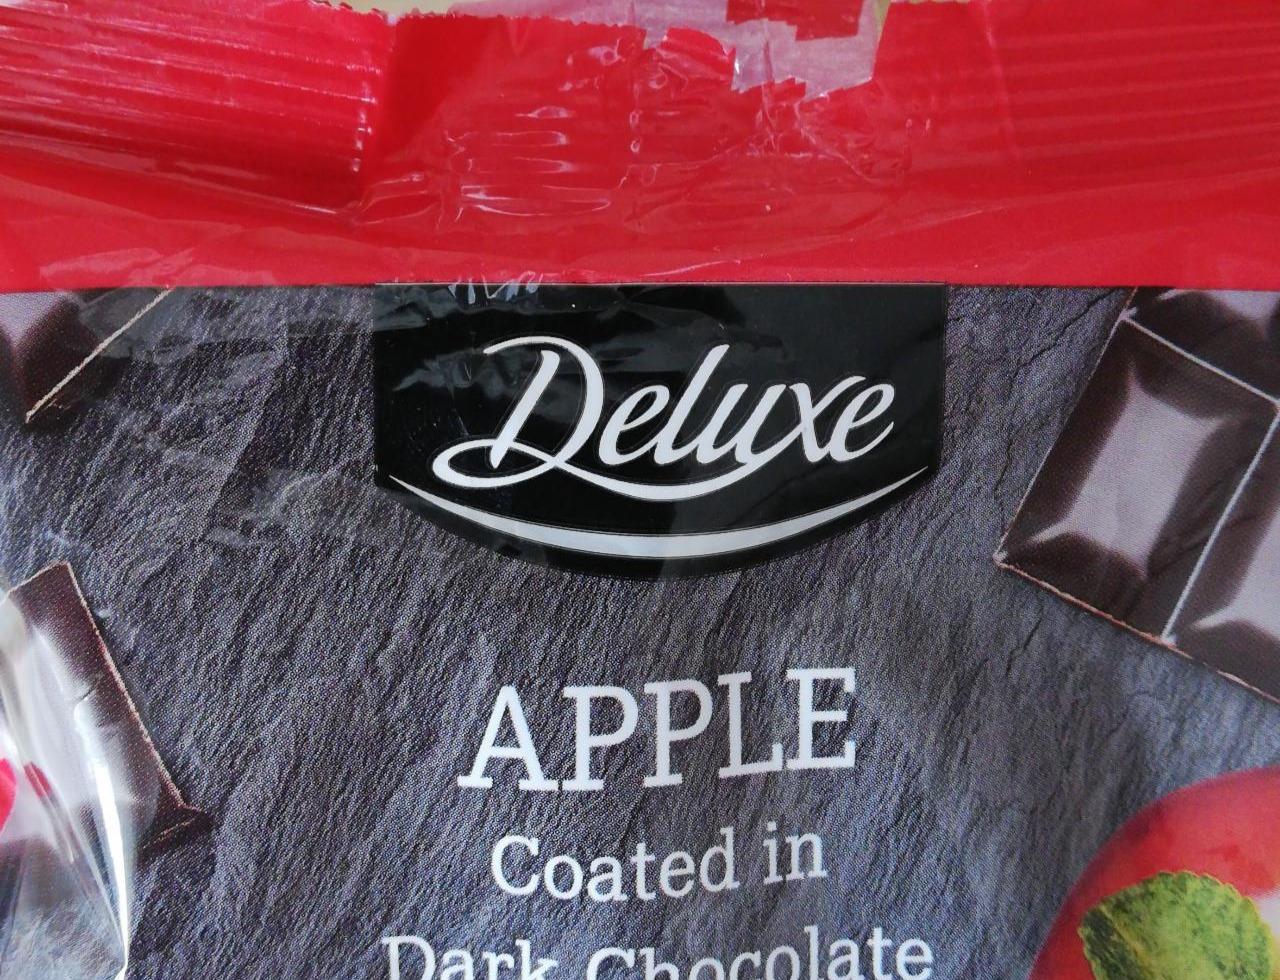 Fotografie - Apple coated in dark chocolate Deluxe